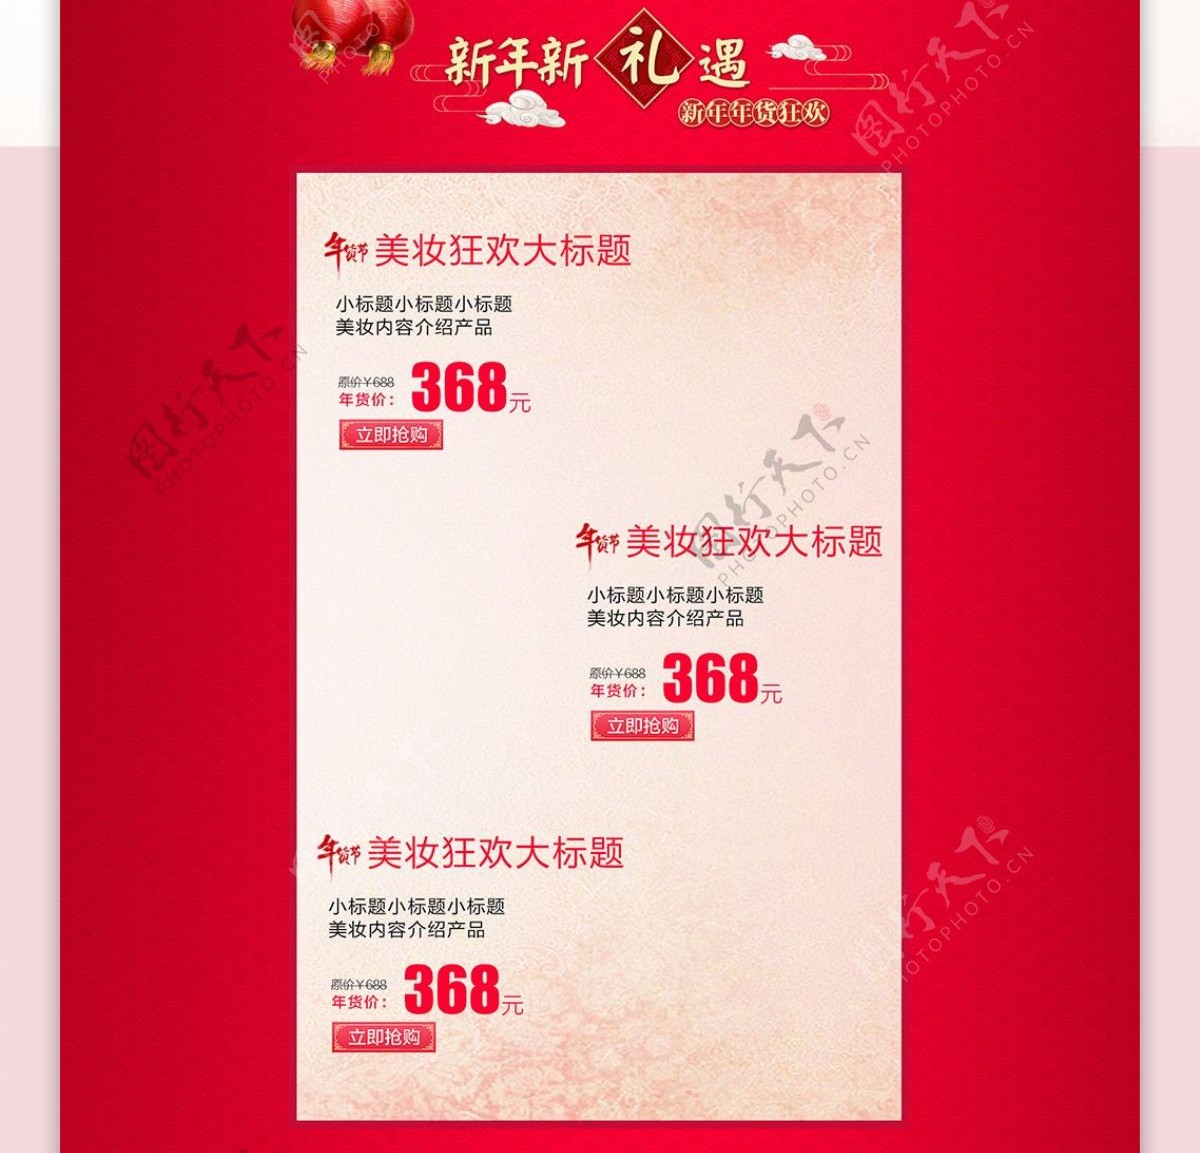 红色喜庆中国风美妆年货节淘宝首页模板